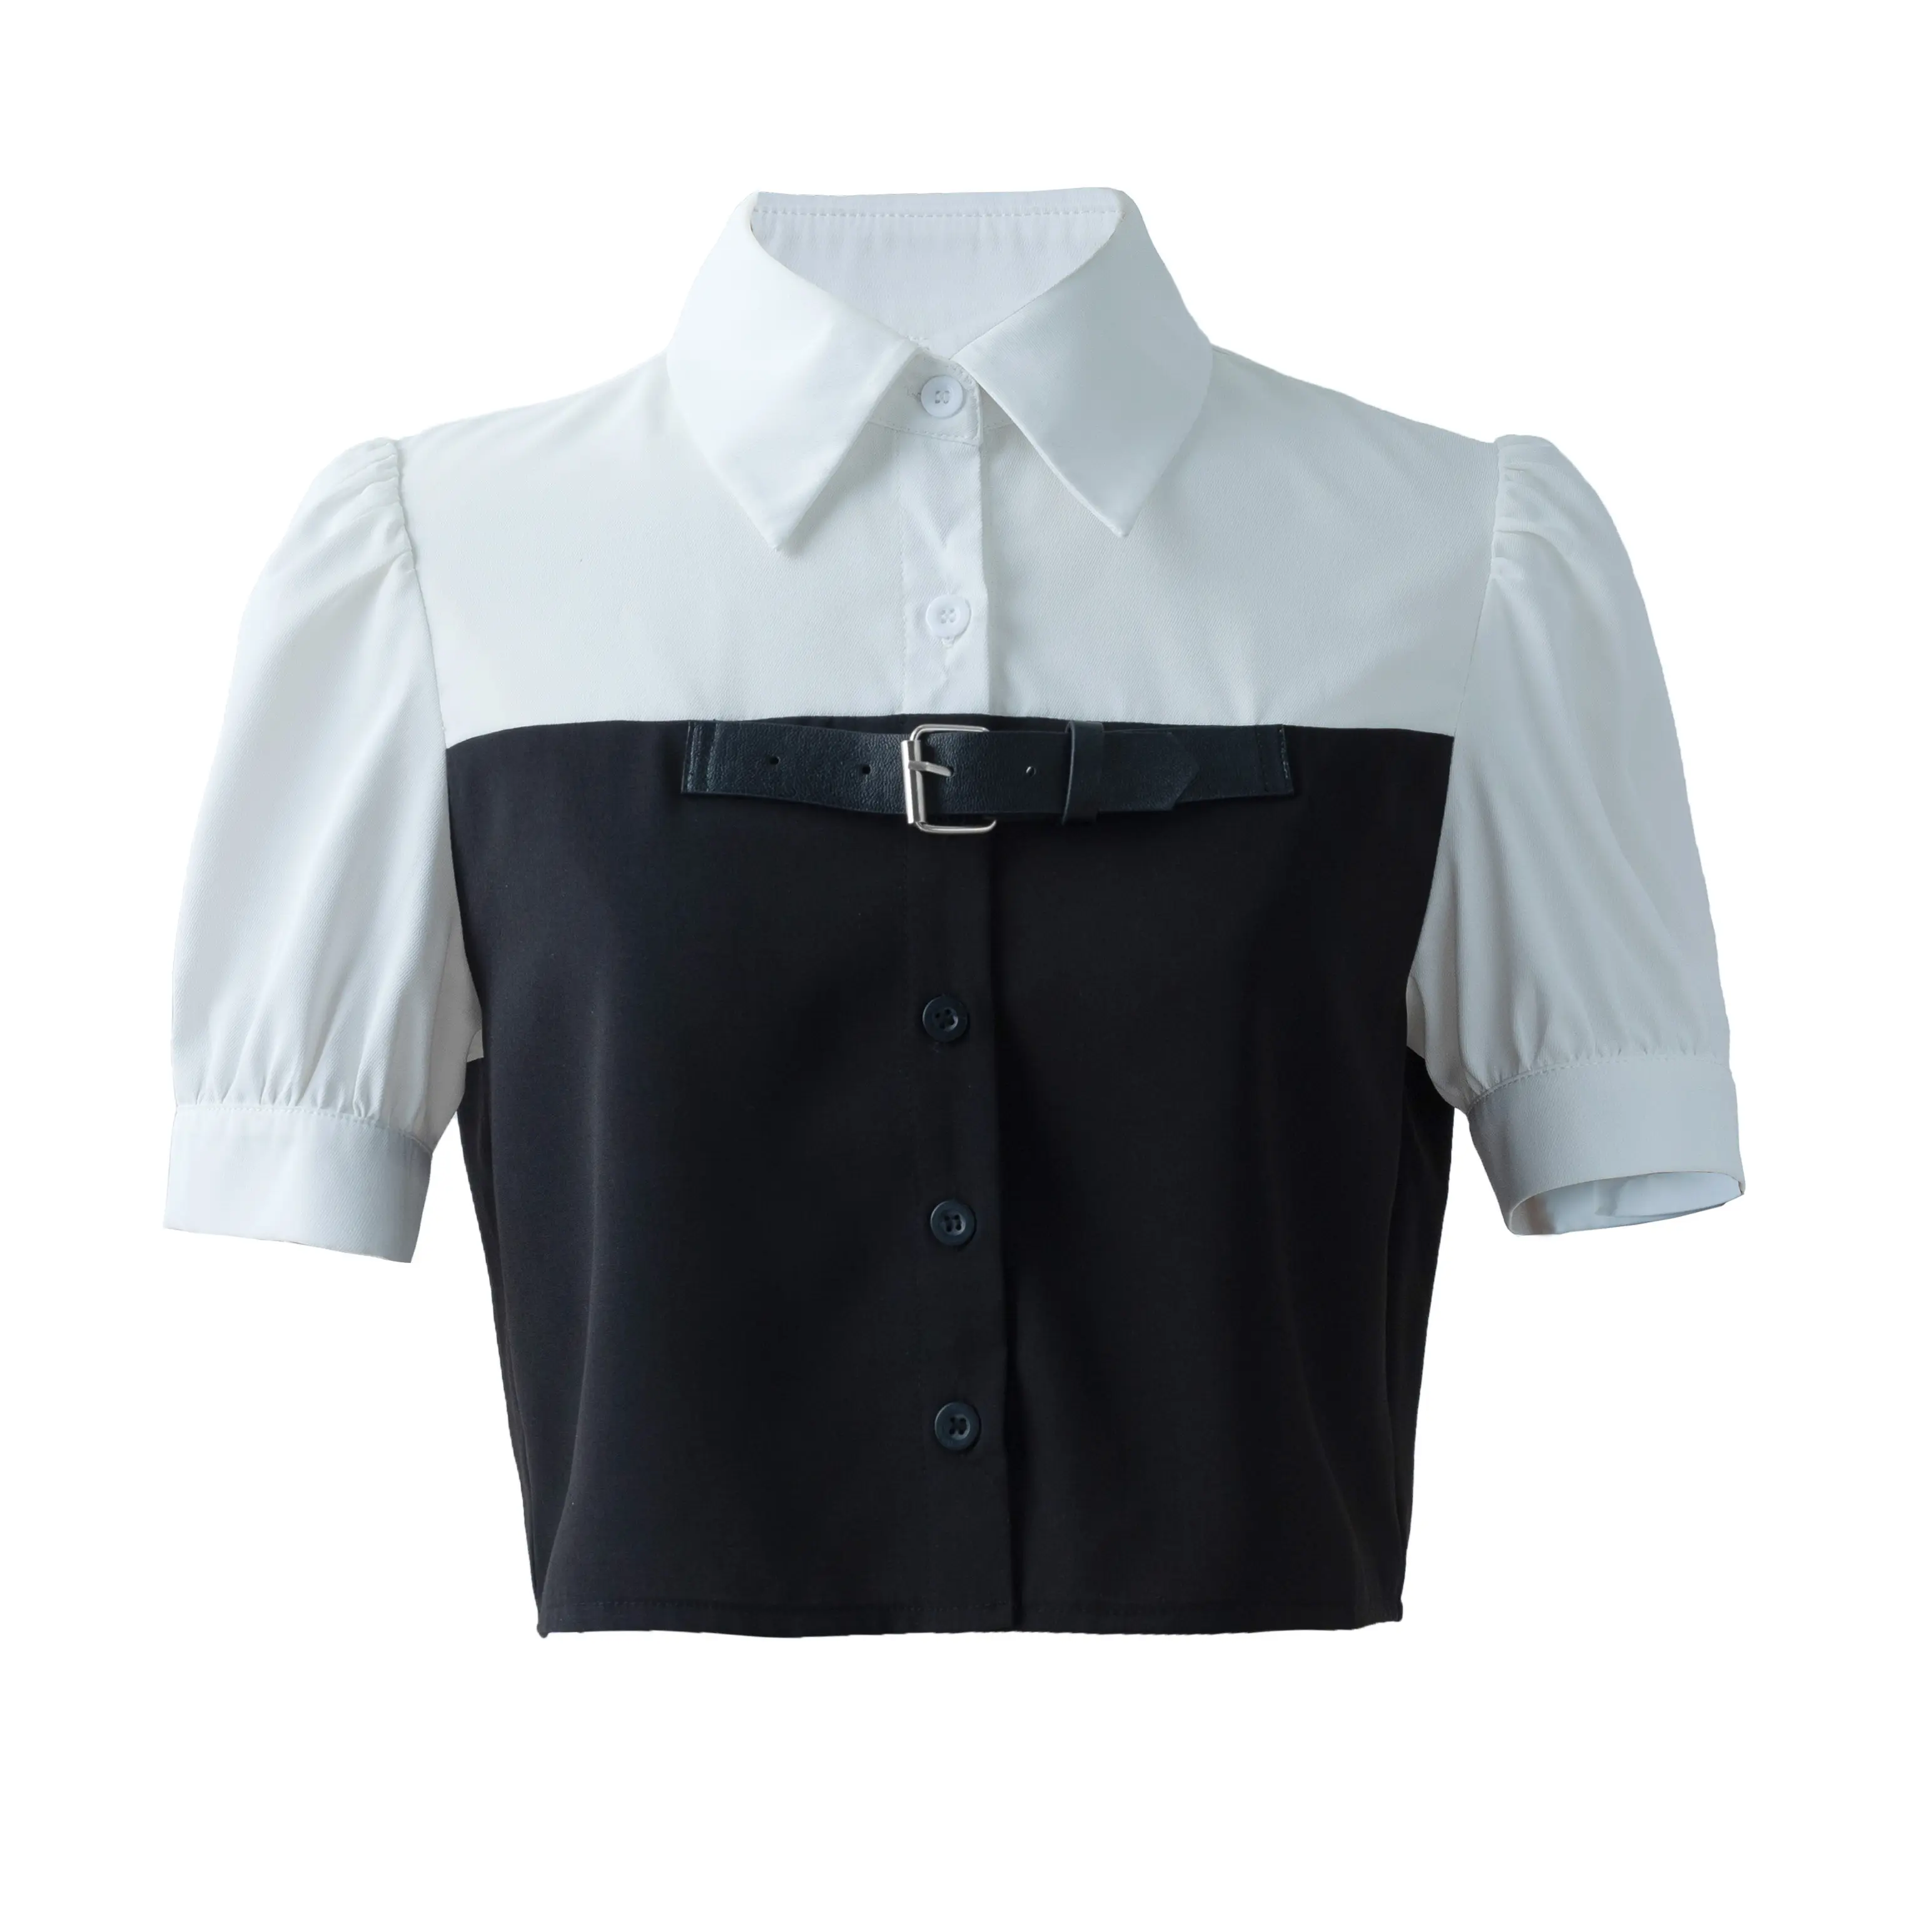 महिलाओं की गर्मियों शर्ट फैशनेबल आकस्मिक काले सफेद चिथड़े शर्ट में सबसे ऊपर लघु आस्तीन त्वचा के अनुकूल